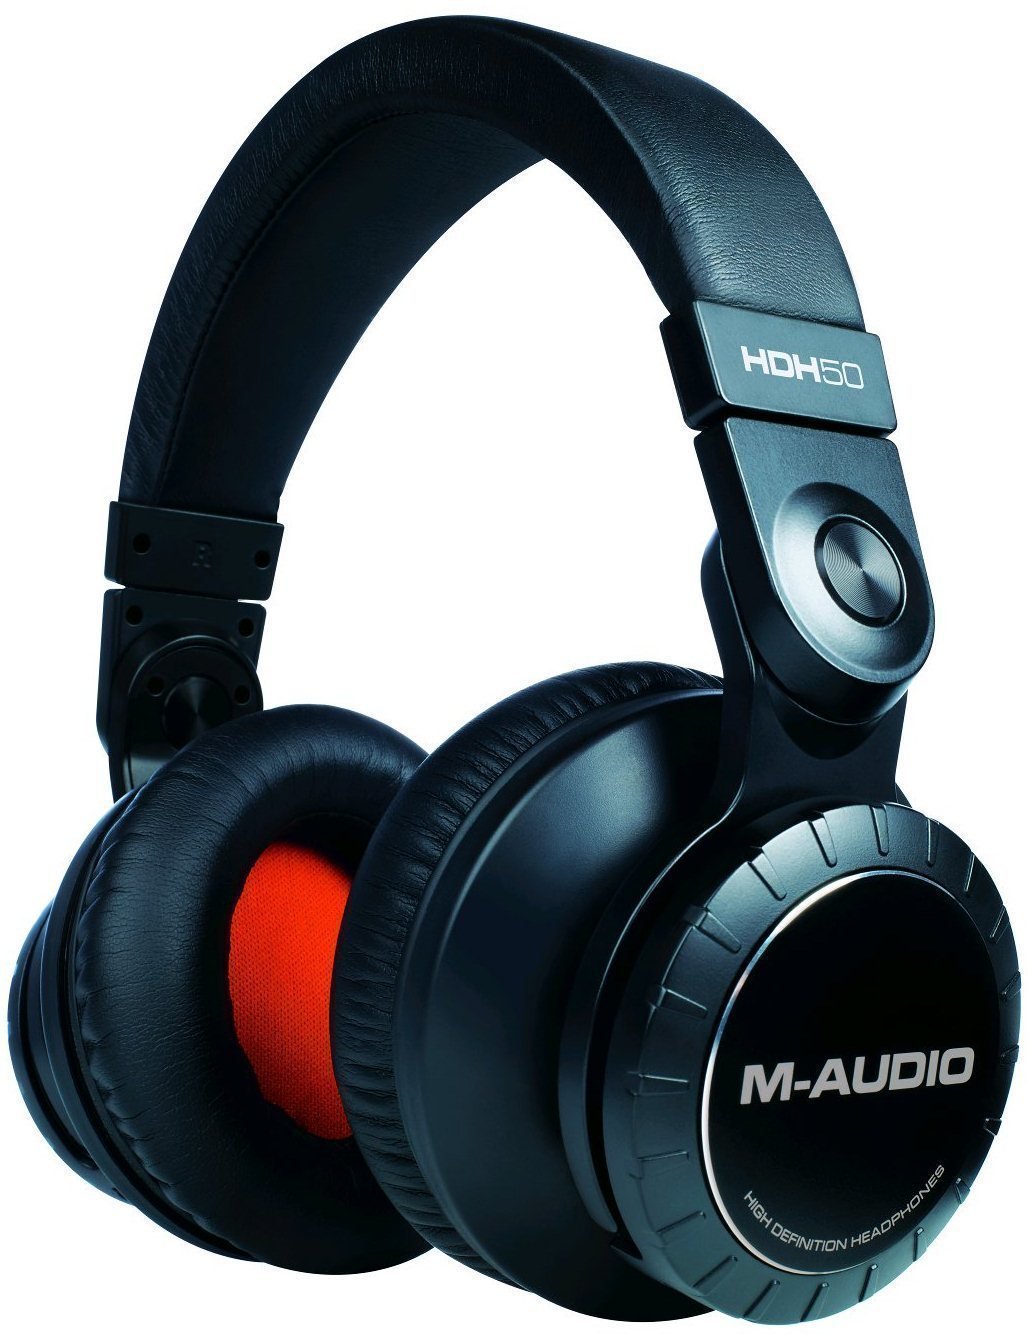 Štúdiové slúchadlá M-Audio HDH50 High Definition Headphones